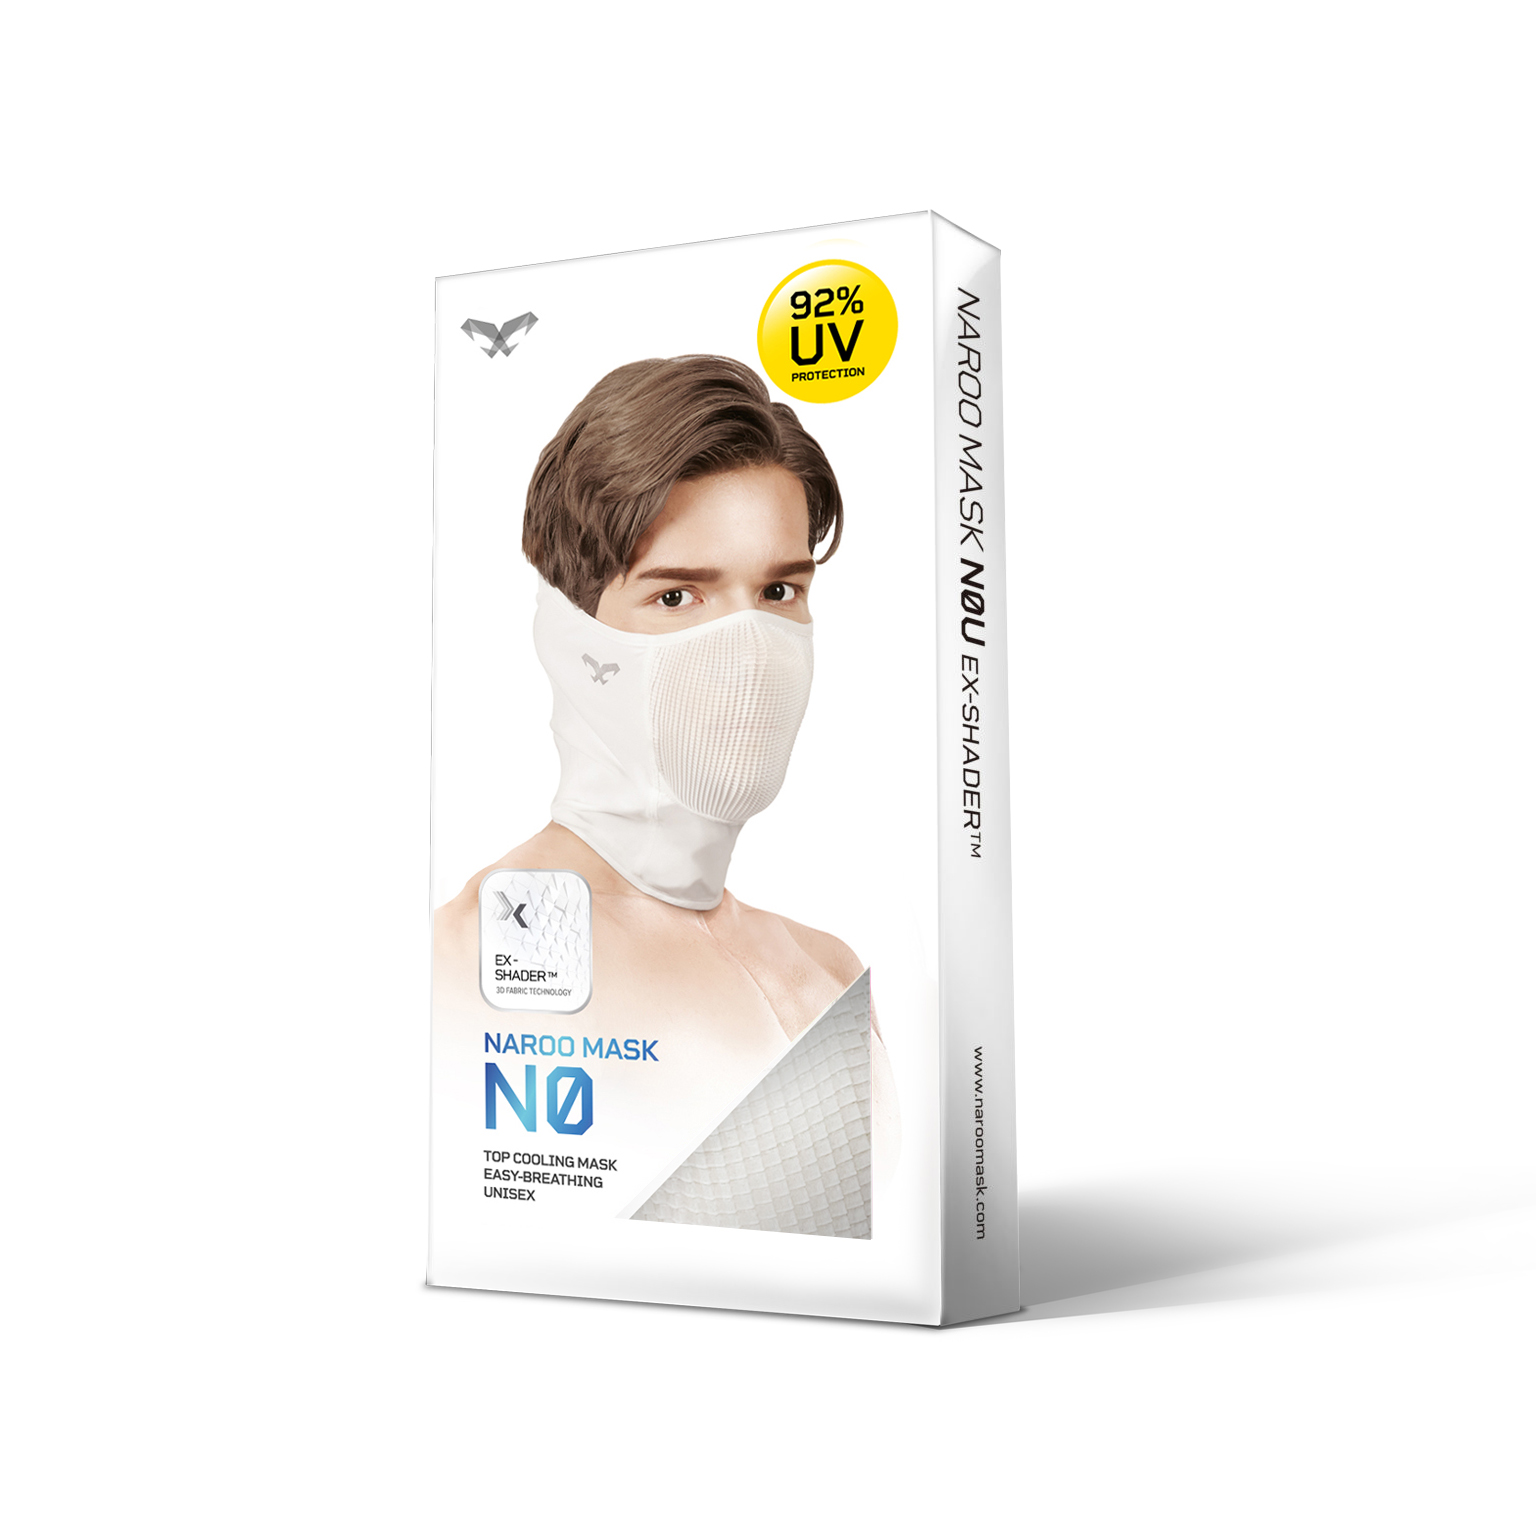 NAROO N0 - balíček pro UV ochrannou sportovní masku pro běh, cyklistiku, rybaření v létě a na jaře